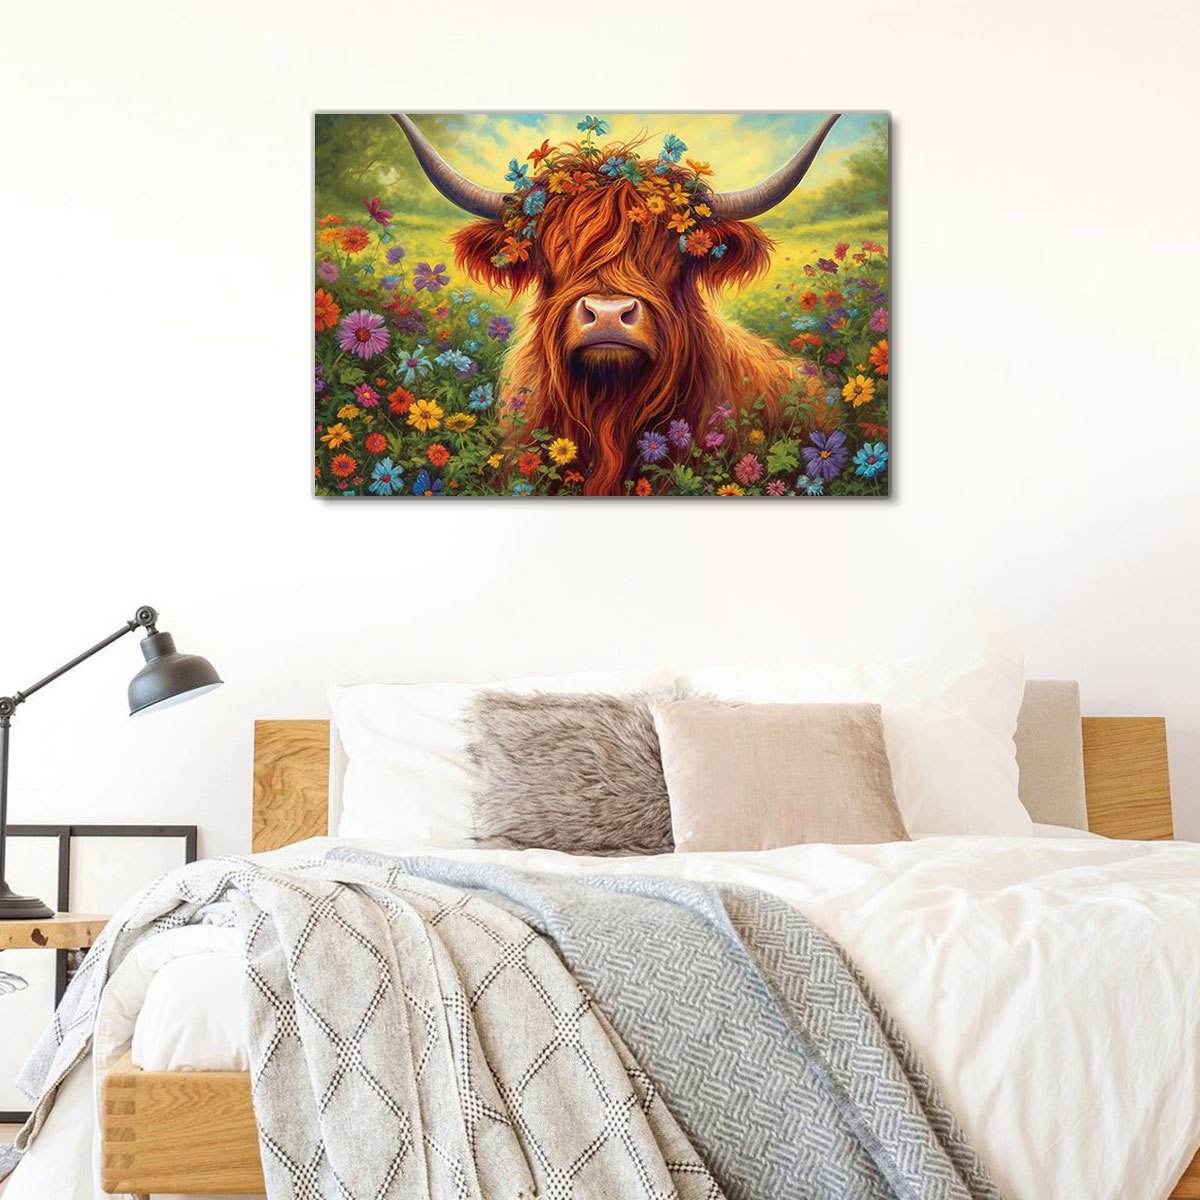 1ピース (11.8*17.7インチ) フレーム付き絵画 ハイランド牛と花